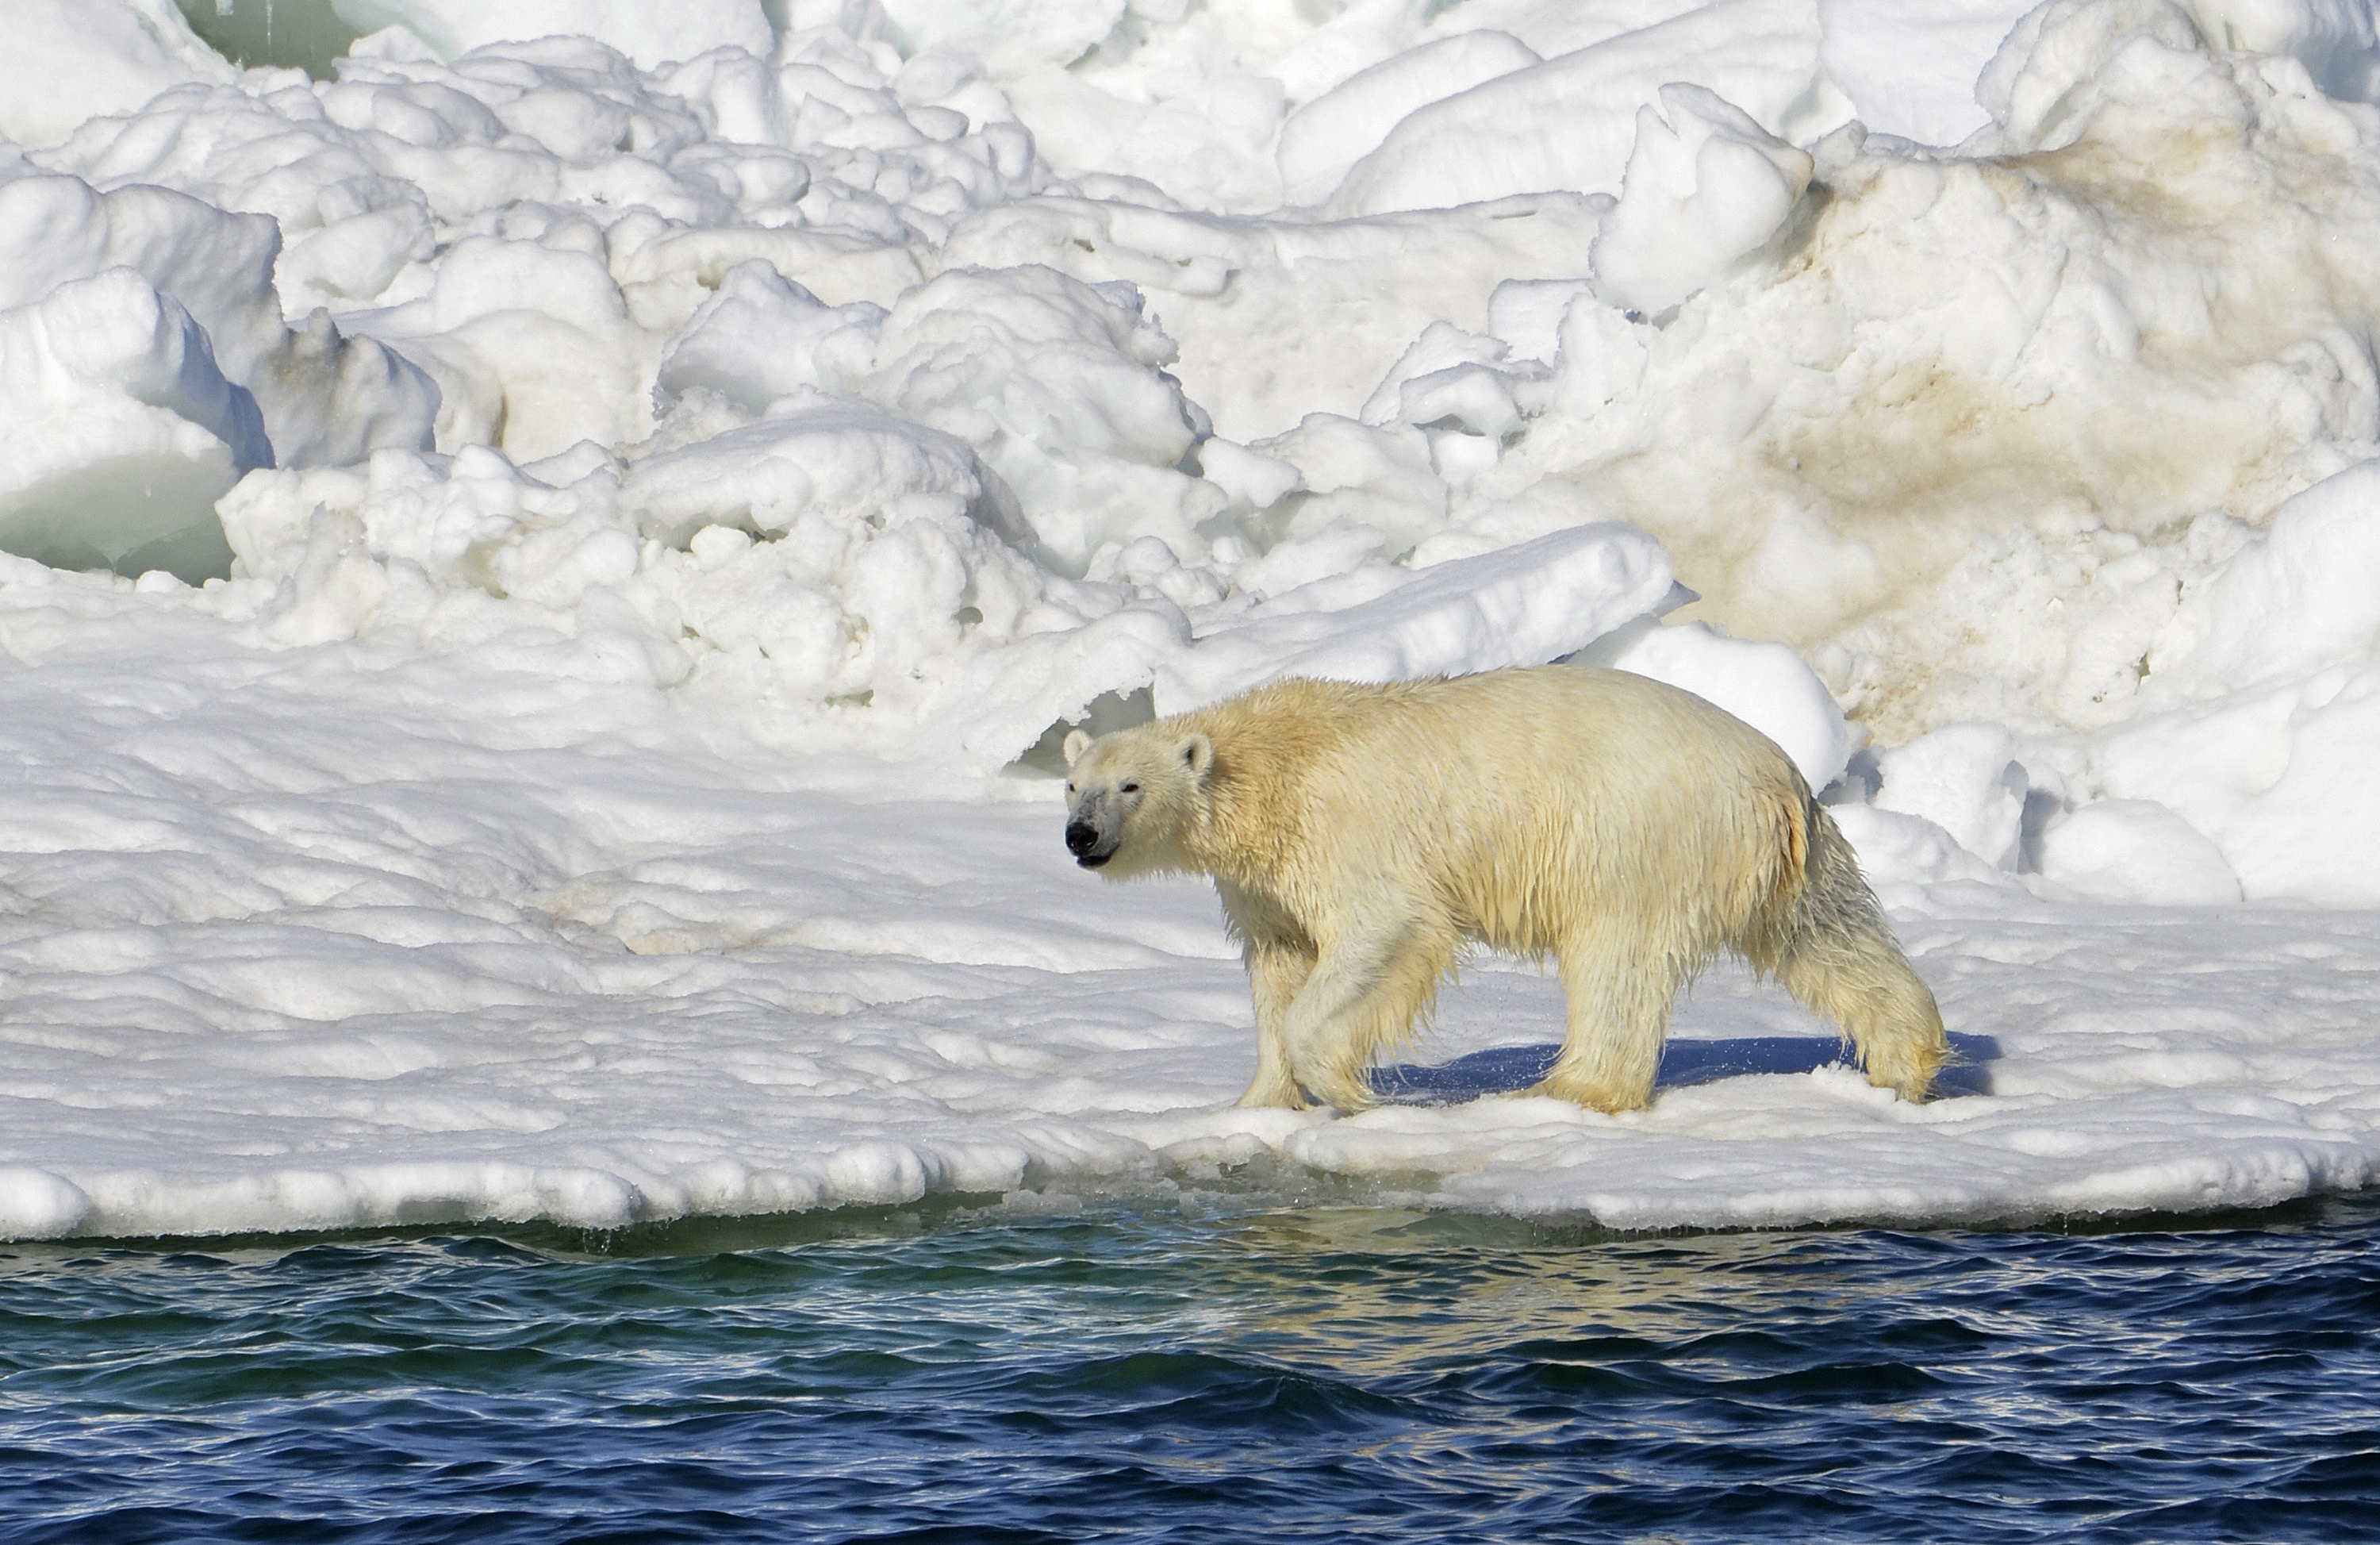 No se encontró rabia u otras enfermedades que causan agresión en el oso polar que mató a la madre y al bebé